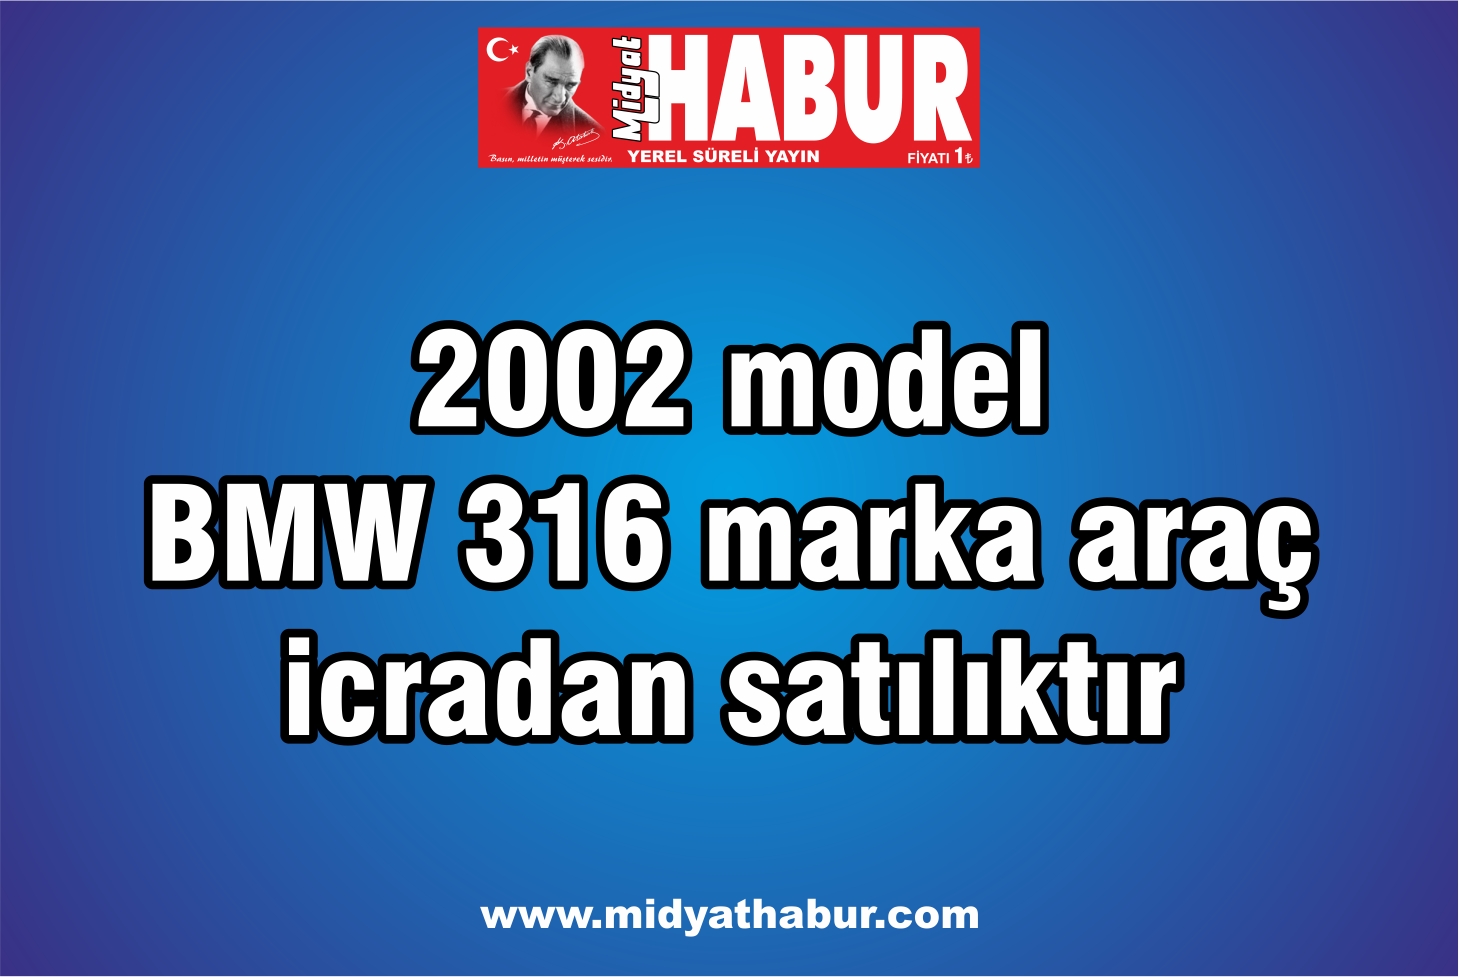 2002 model BMW 316 marka araç icradan satılıktır